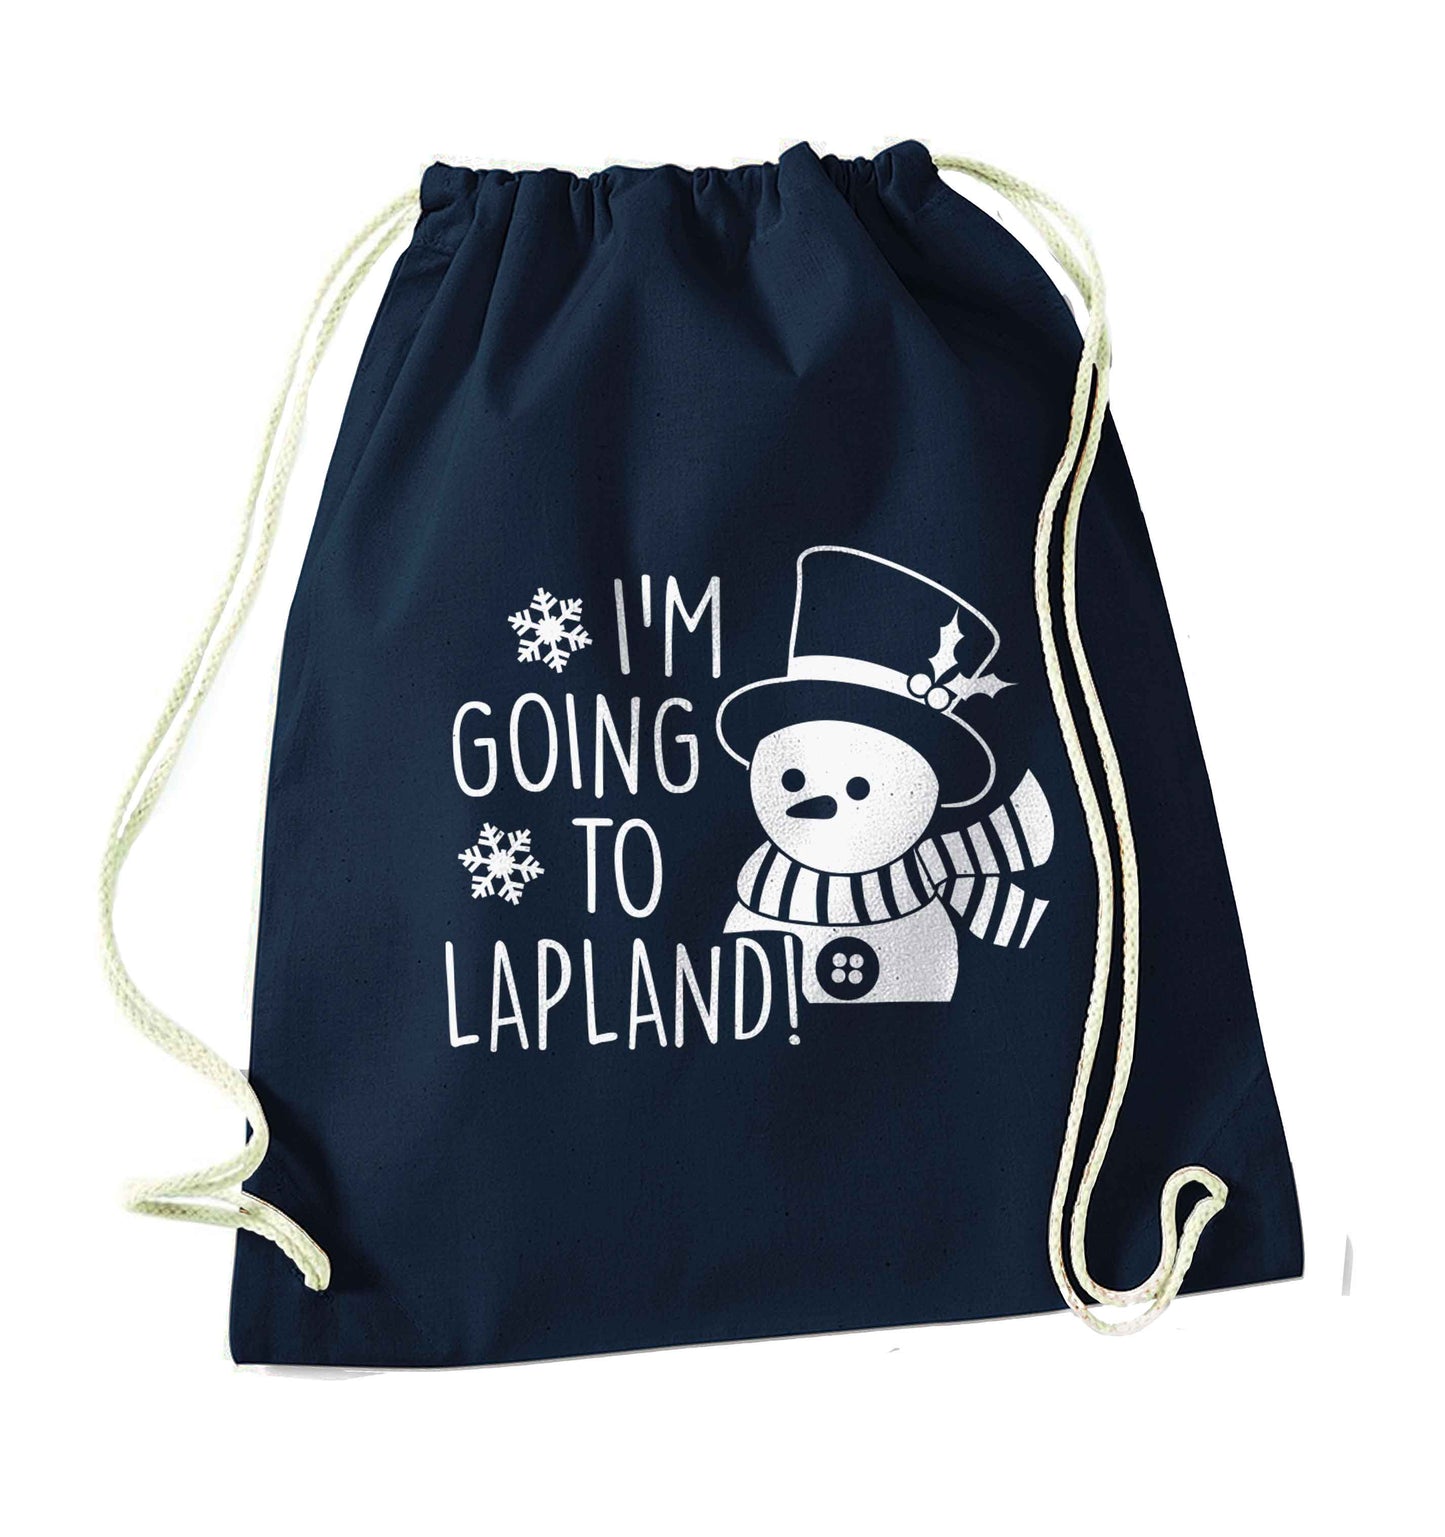 I'm going to Lapland navy drawstring bag